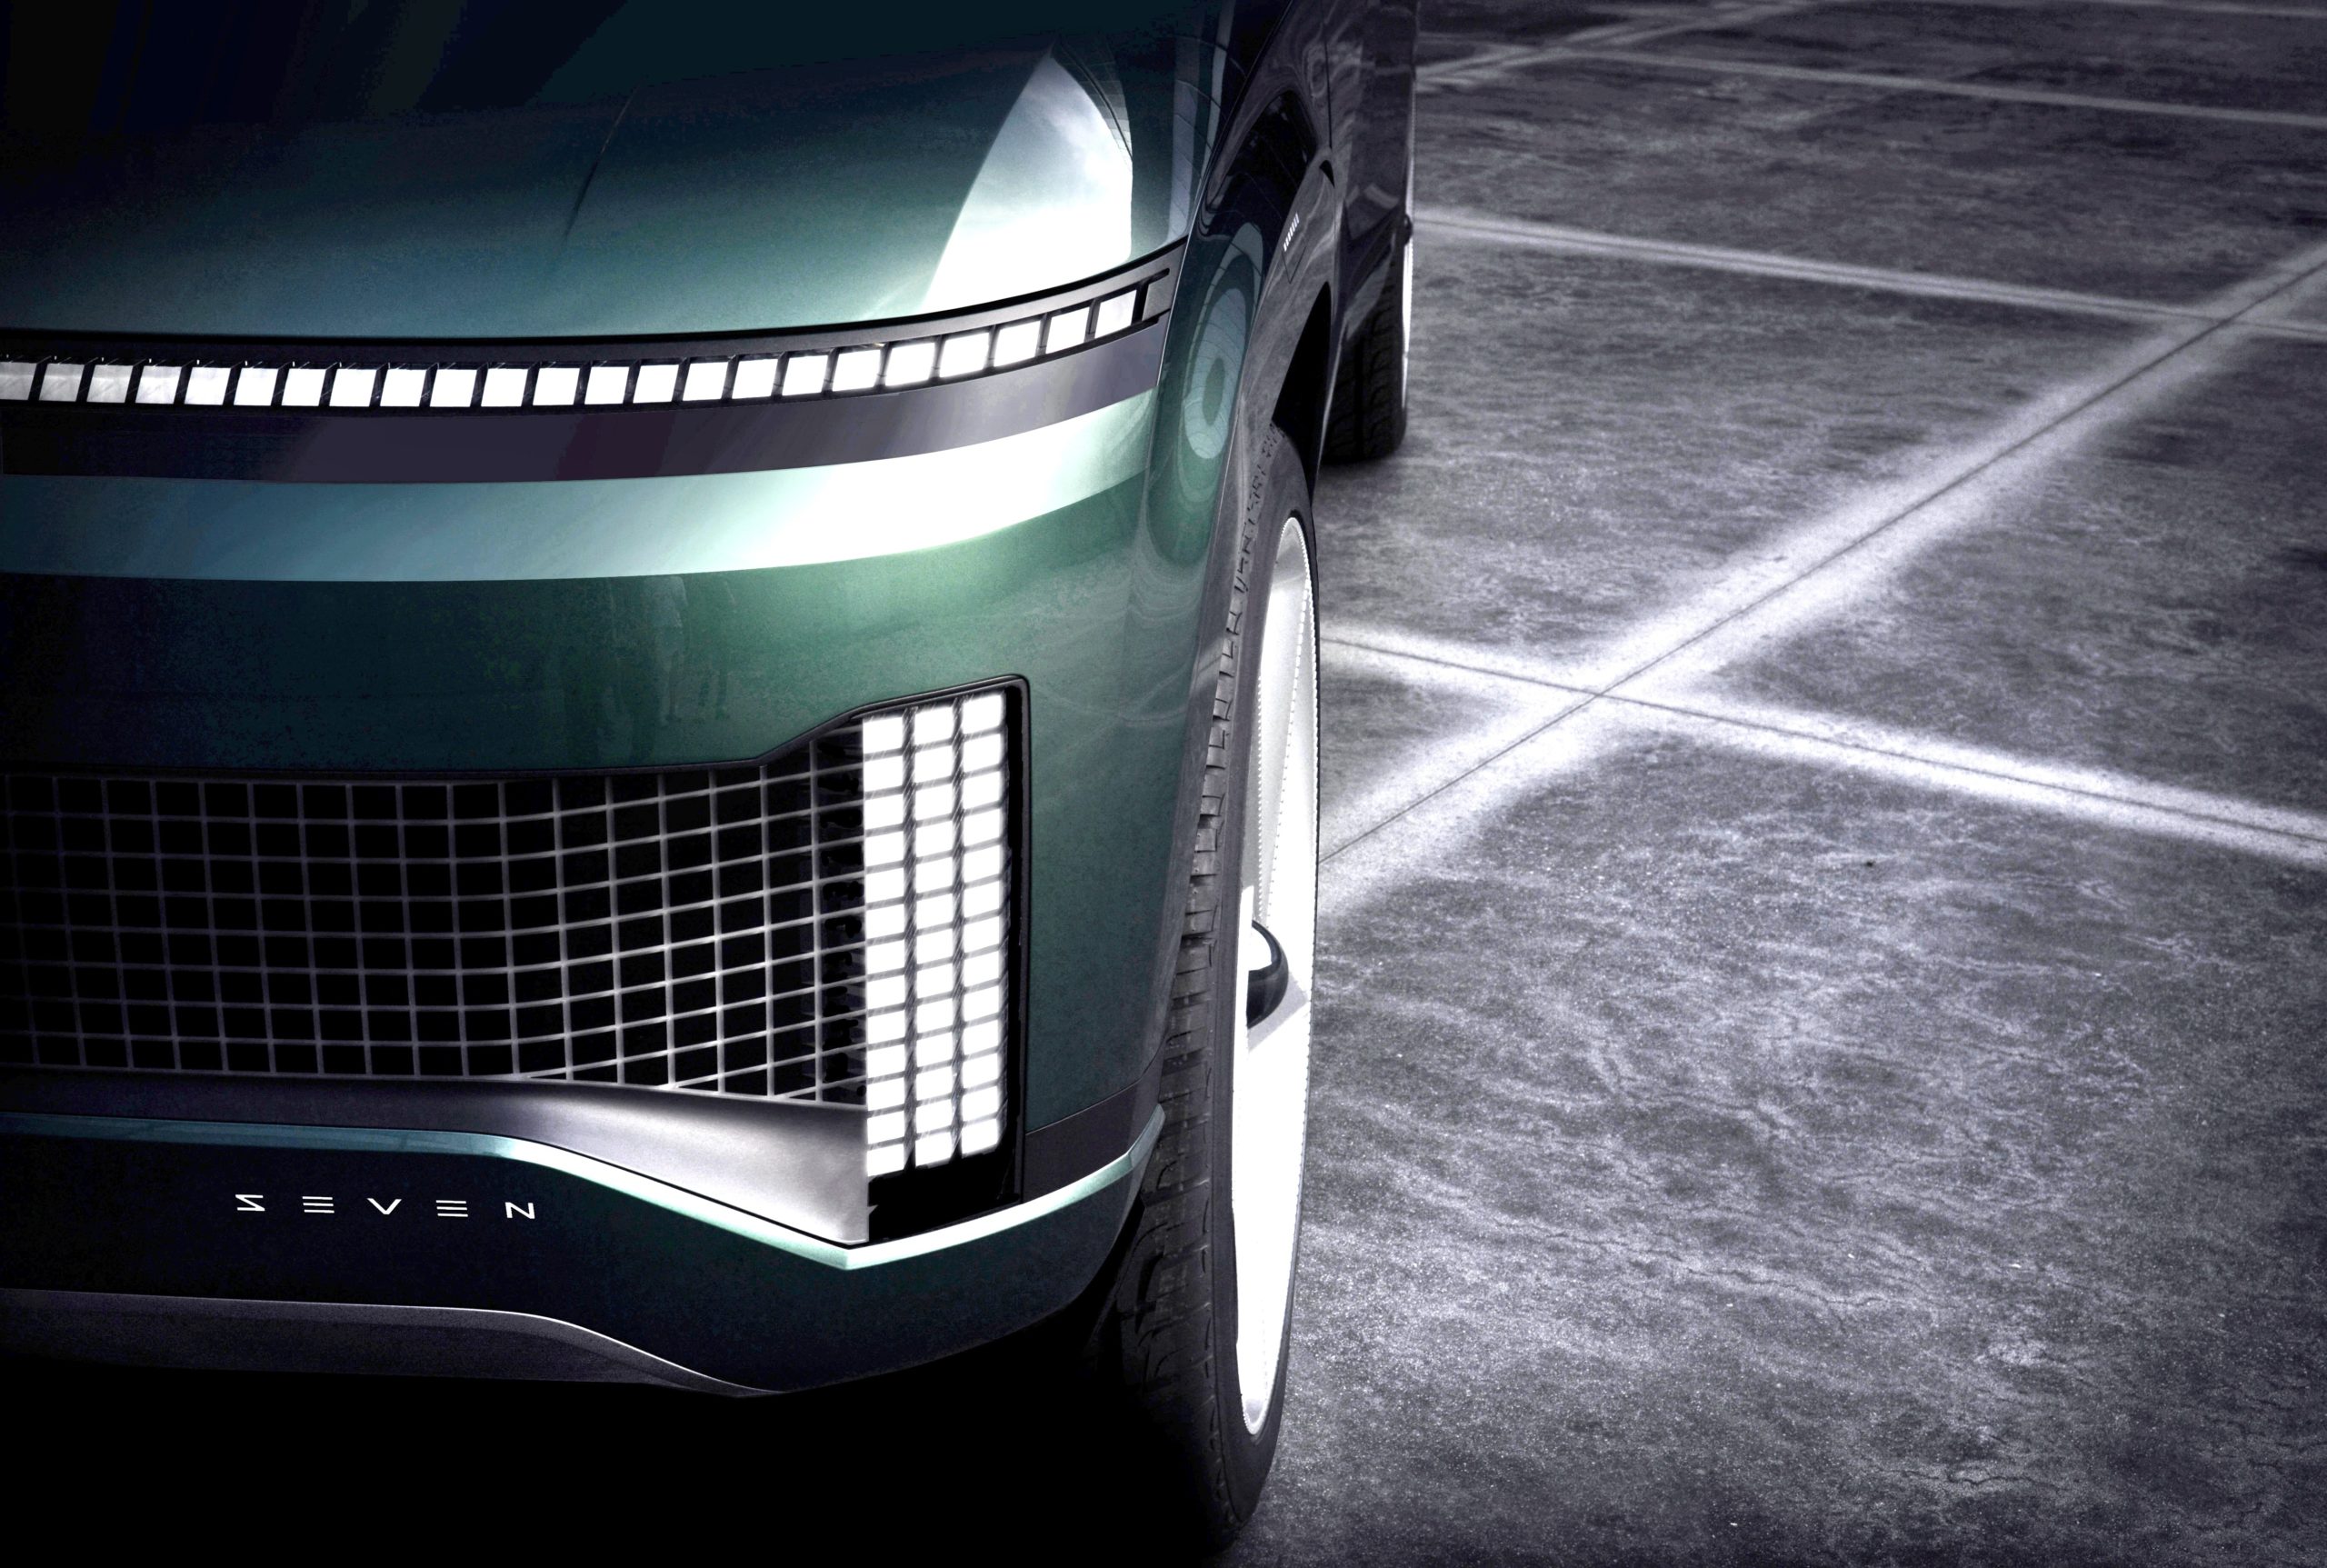 کمپانی هیوندای از یک خودرو مفهومی کاملاً خودکار و برقی به نام SEVEN رونمایی کرده که فضای زندگی بیشتری از یک خودرو رودستر دارد.